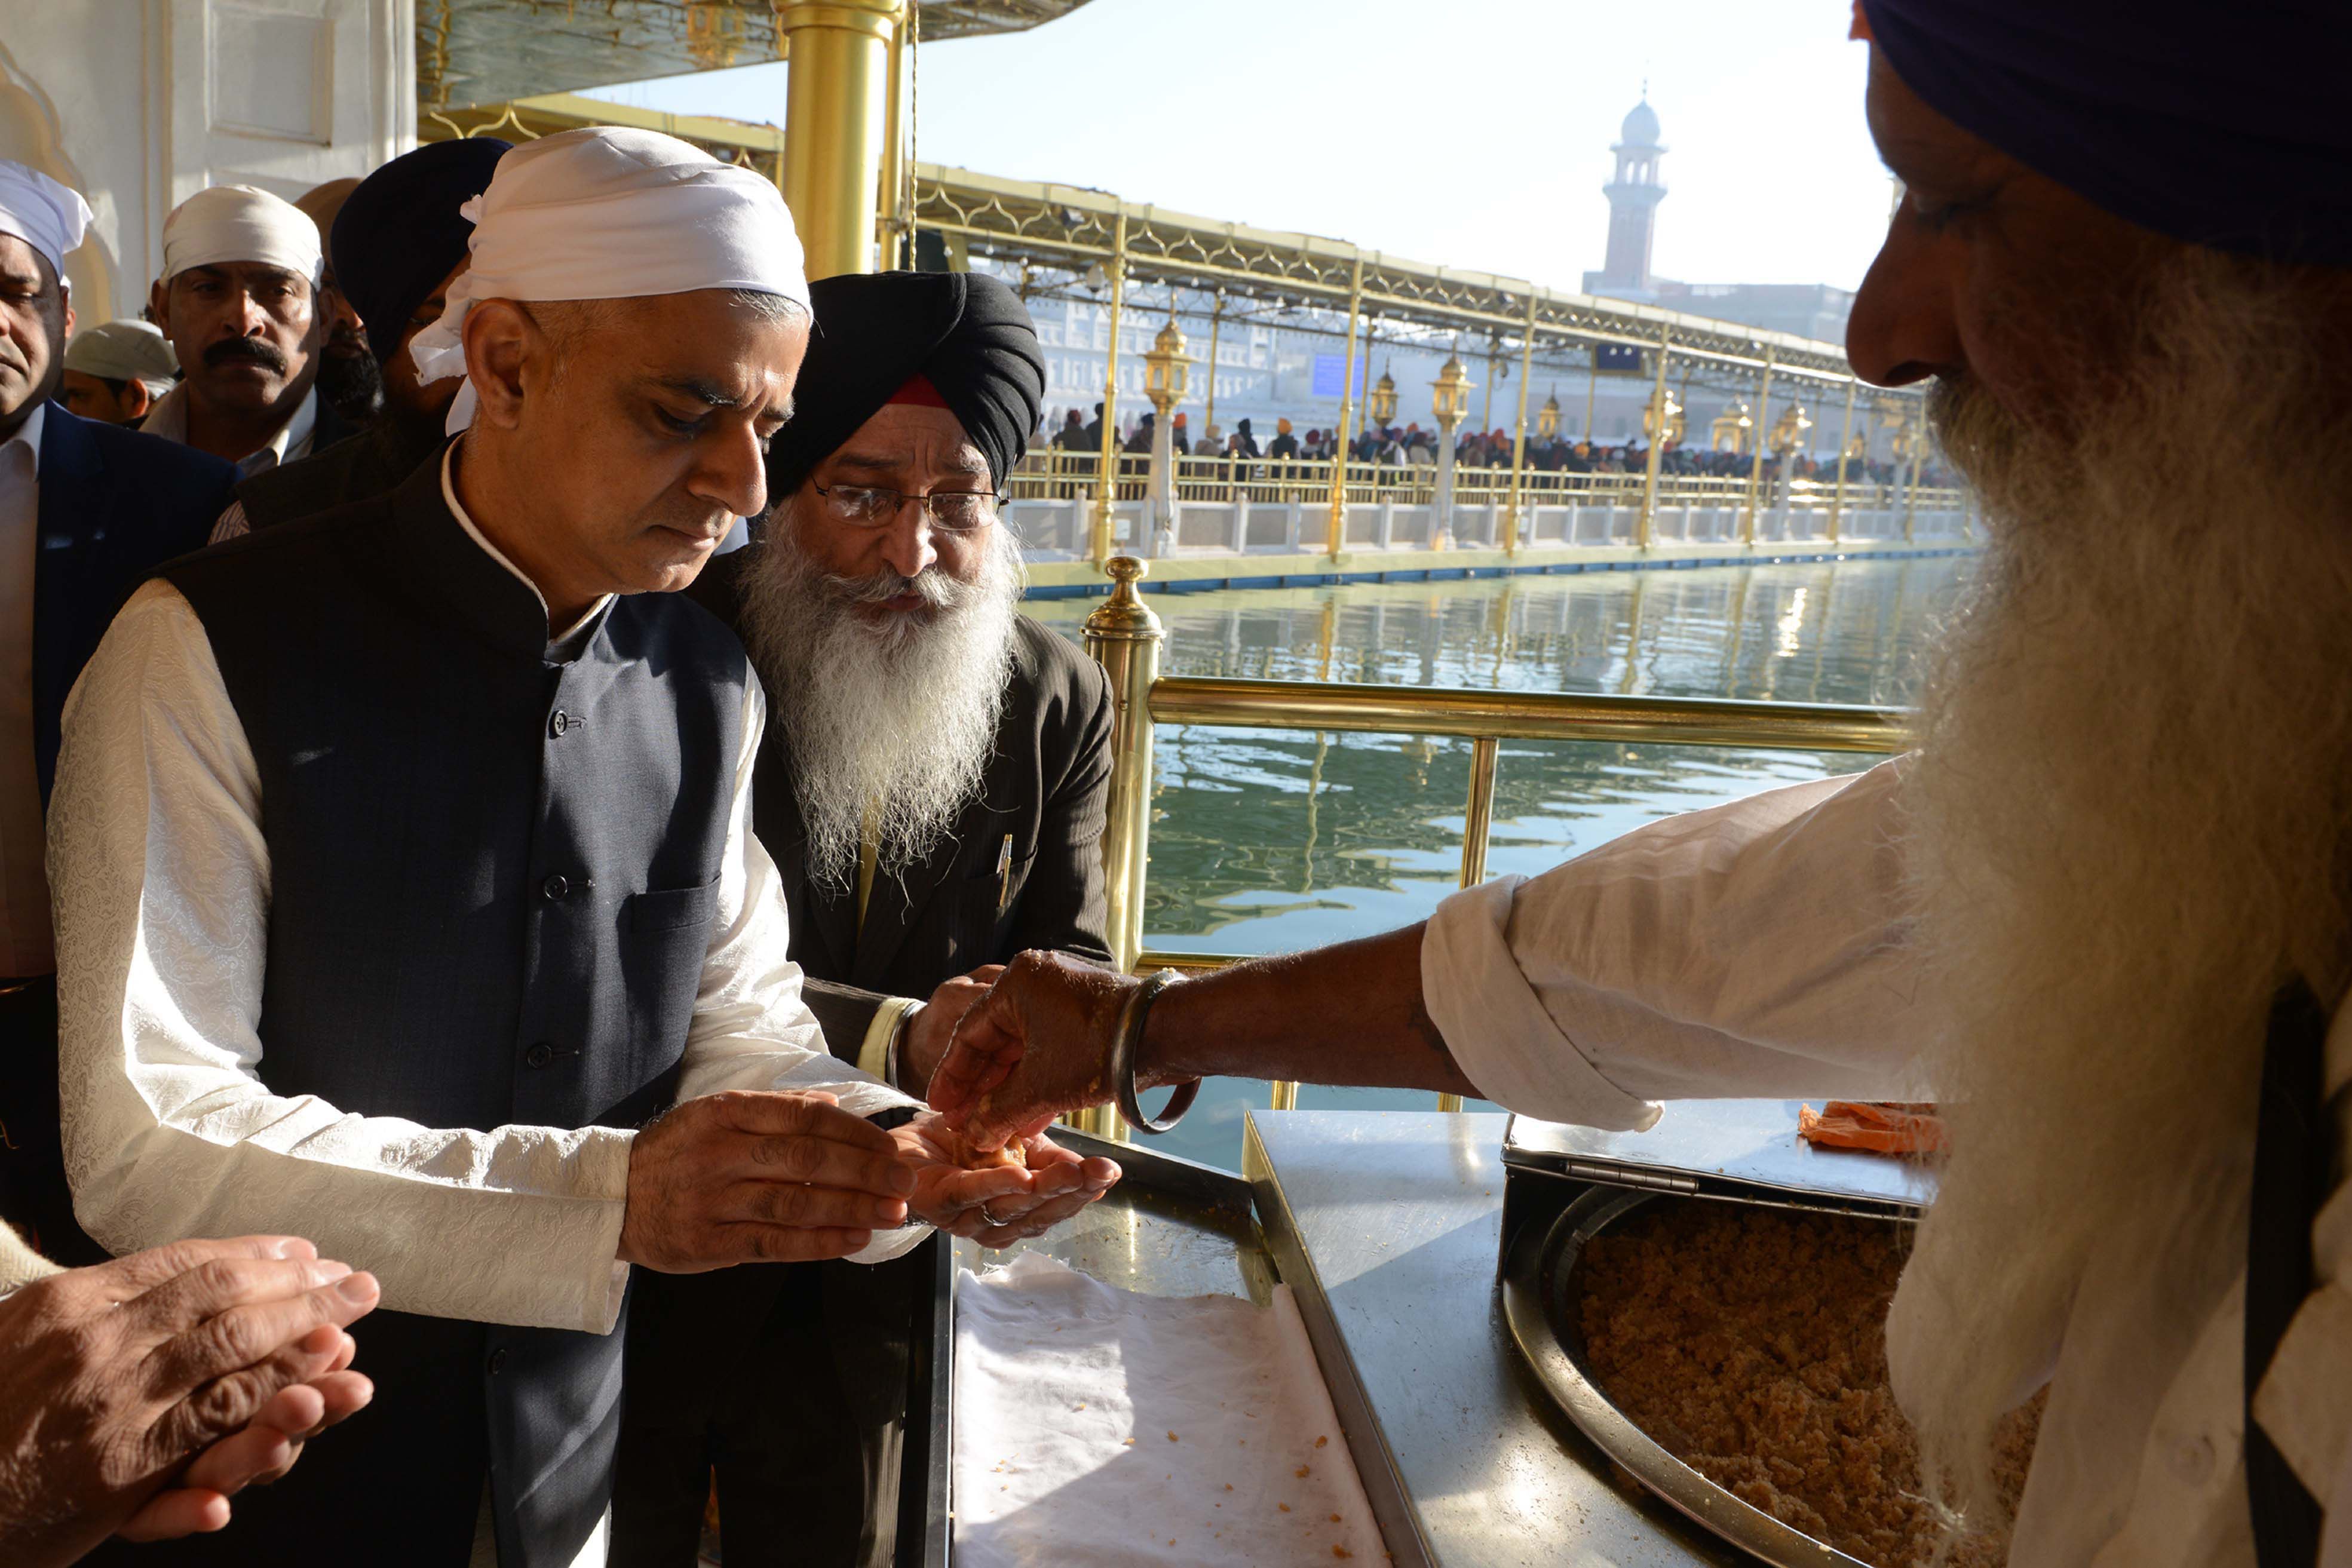 صادق خان عمدة لندن يأخذ الأكل فى المعبد الذهبى